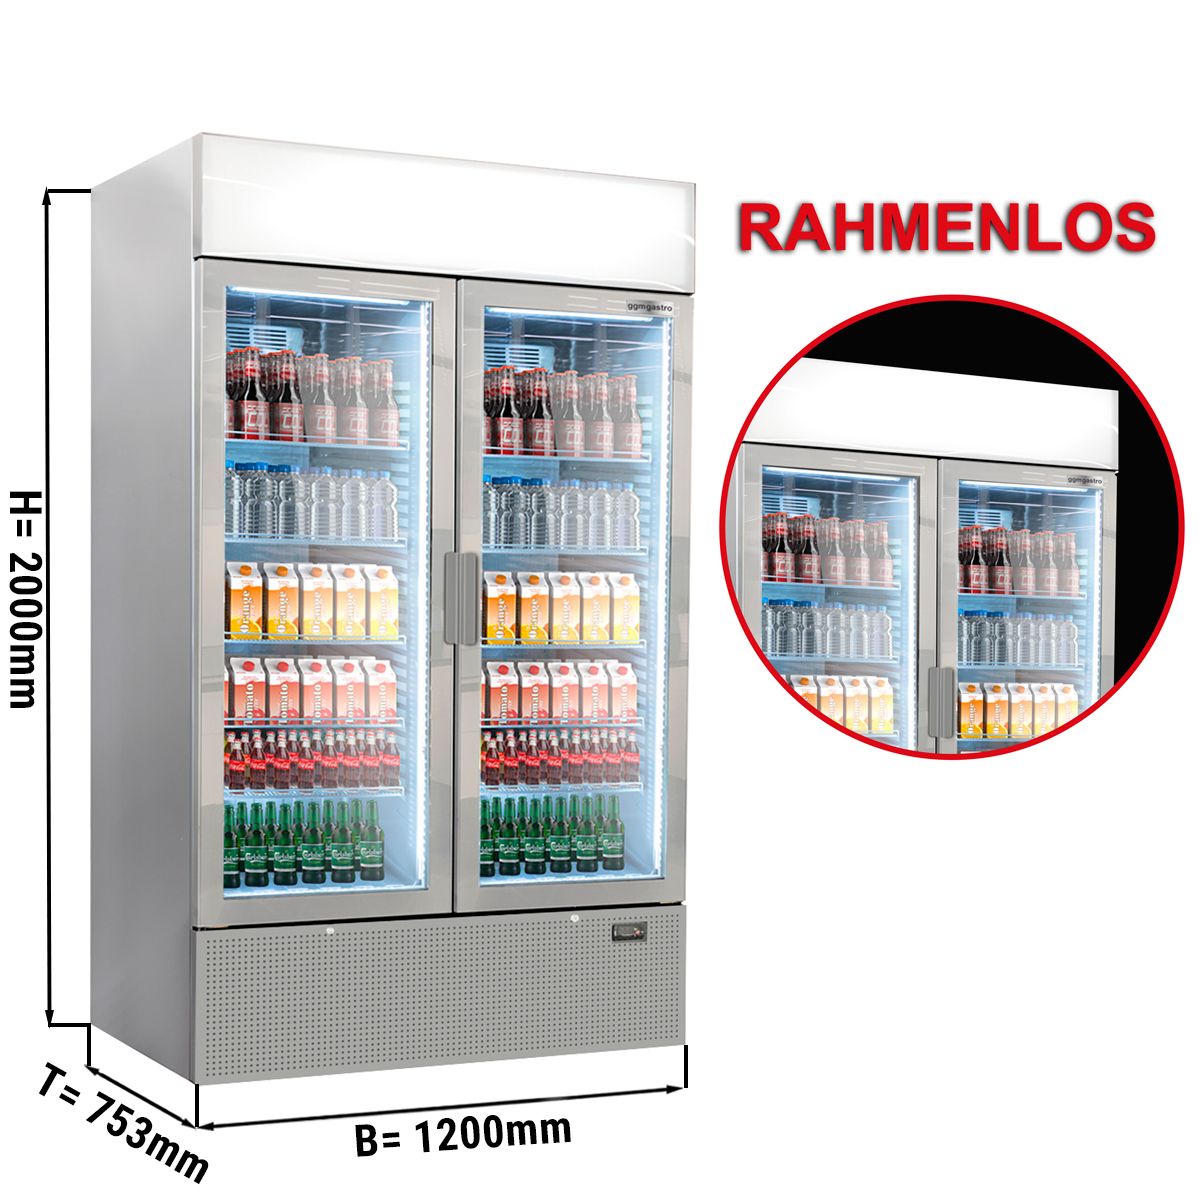 Getränkekühlschrank - 1048 Liter - rahmenloses Design - mit Werbedisplay